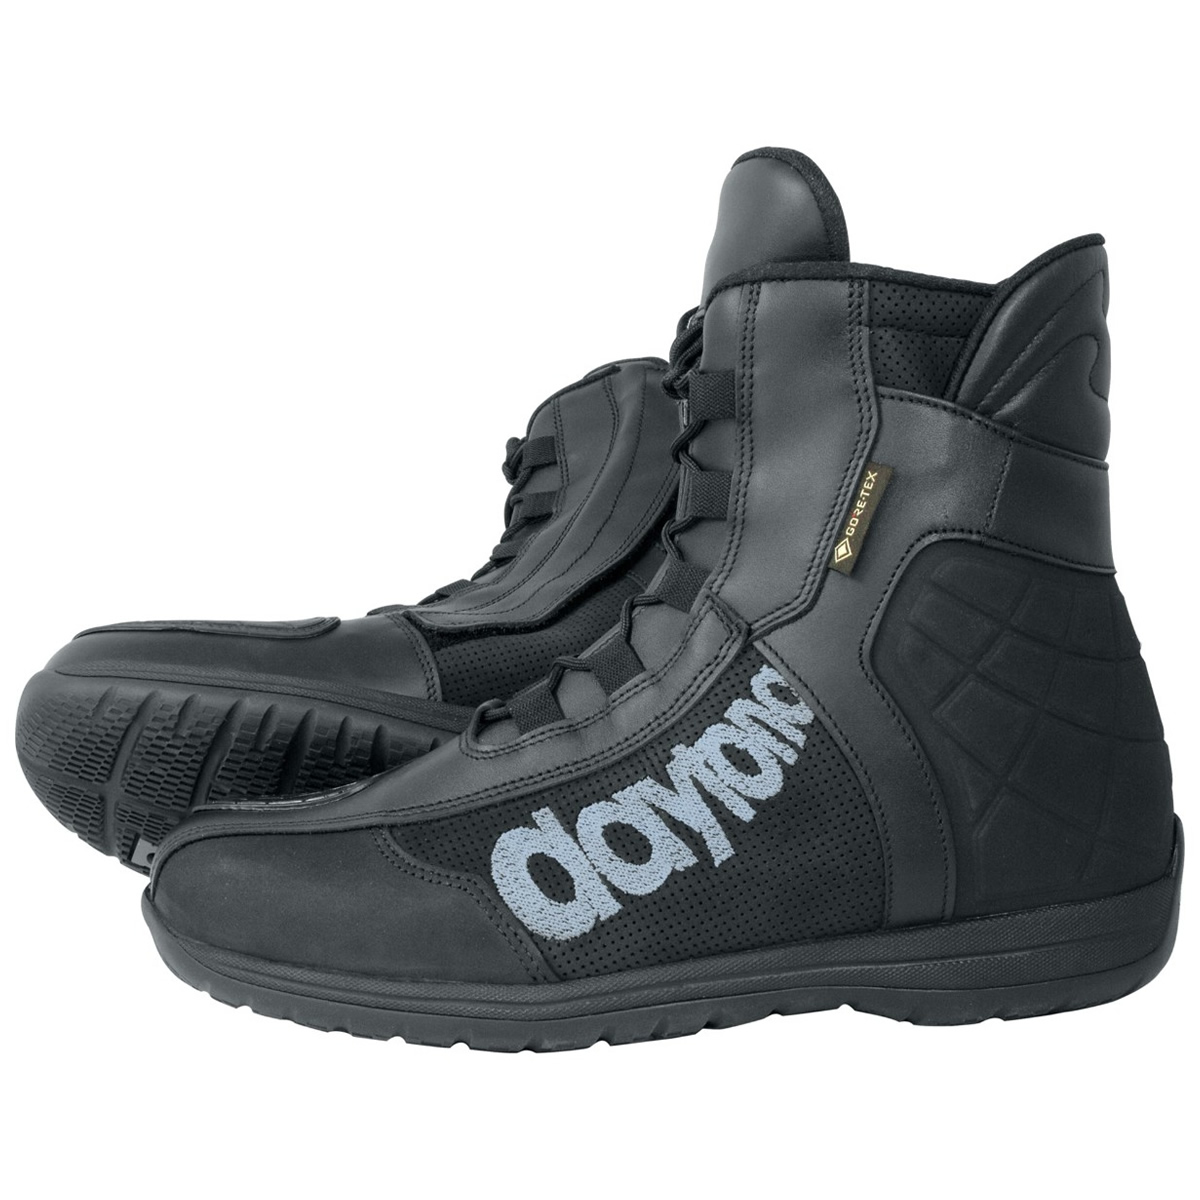 Daytona Schuhe AC Dry GTX G2, schwarz